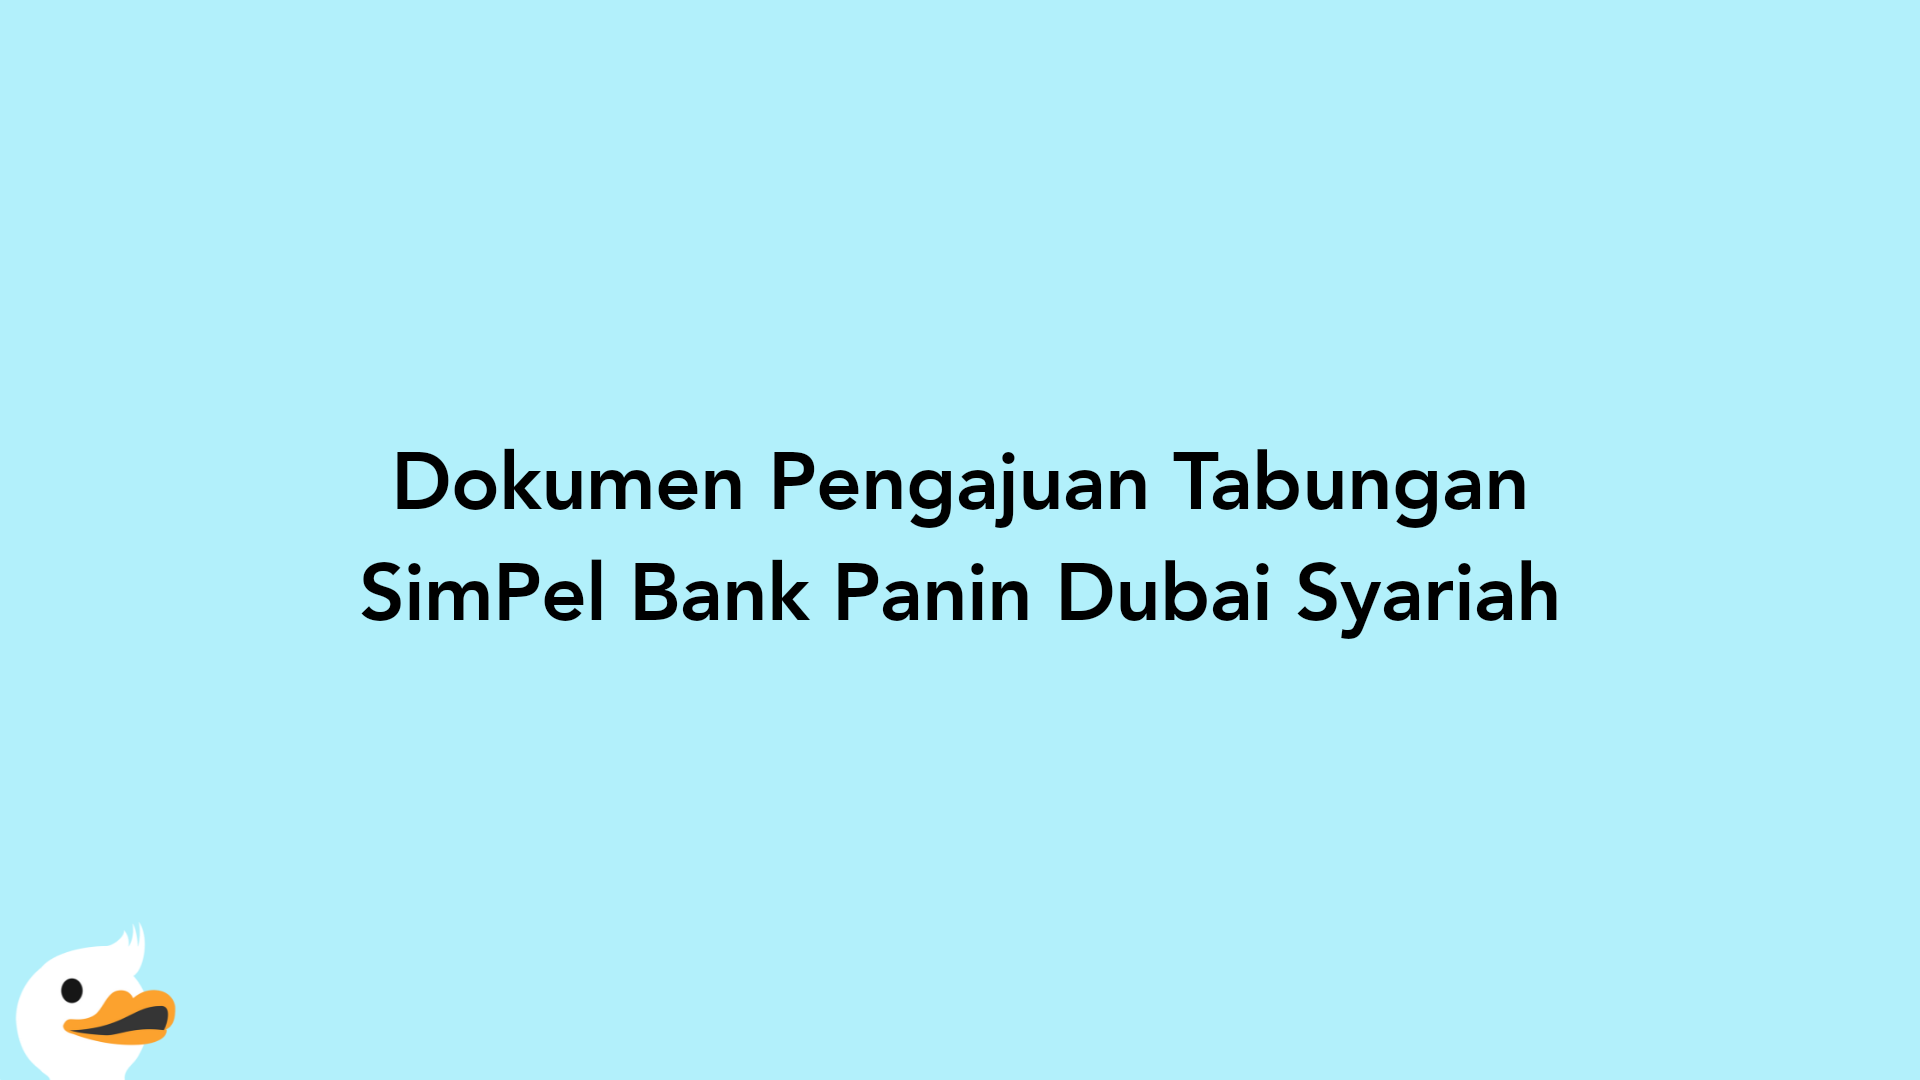 Dokumen Pengajuan Tabungan SimPel Bank Panin Dubai Syariah